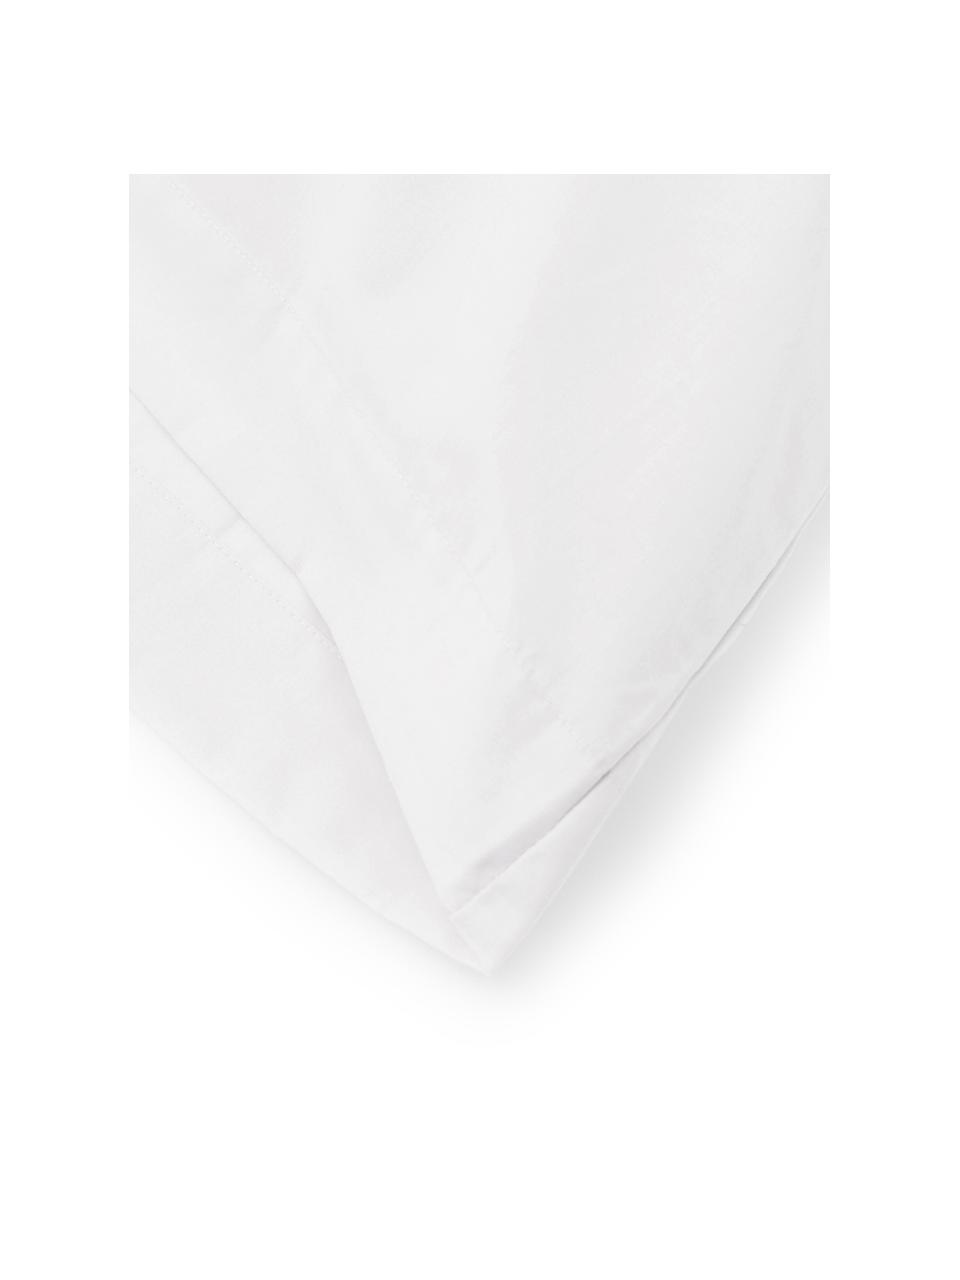 Funda de almohada Plain Dye, 50 x 110 cm, 100% algodón
El algodón da una sensación agradable y suave en la piel, absorbe bien la humedad y es adecuado para personas alérgicas, Blanco, An 50 x L 110 cm